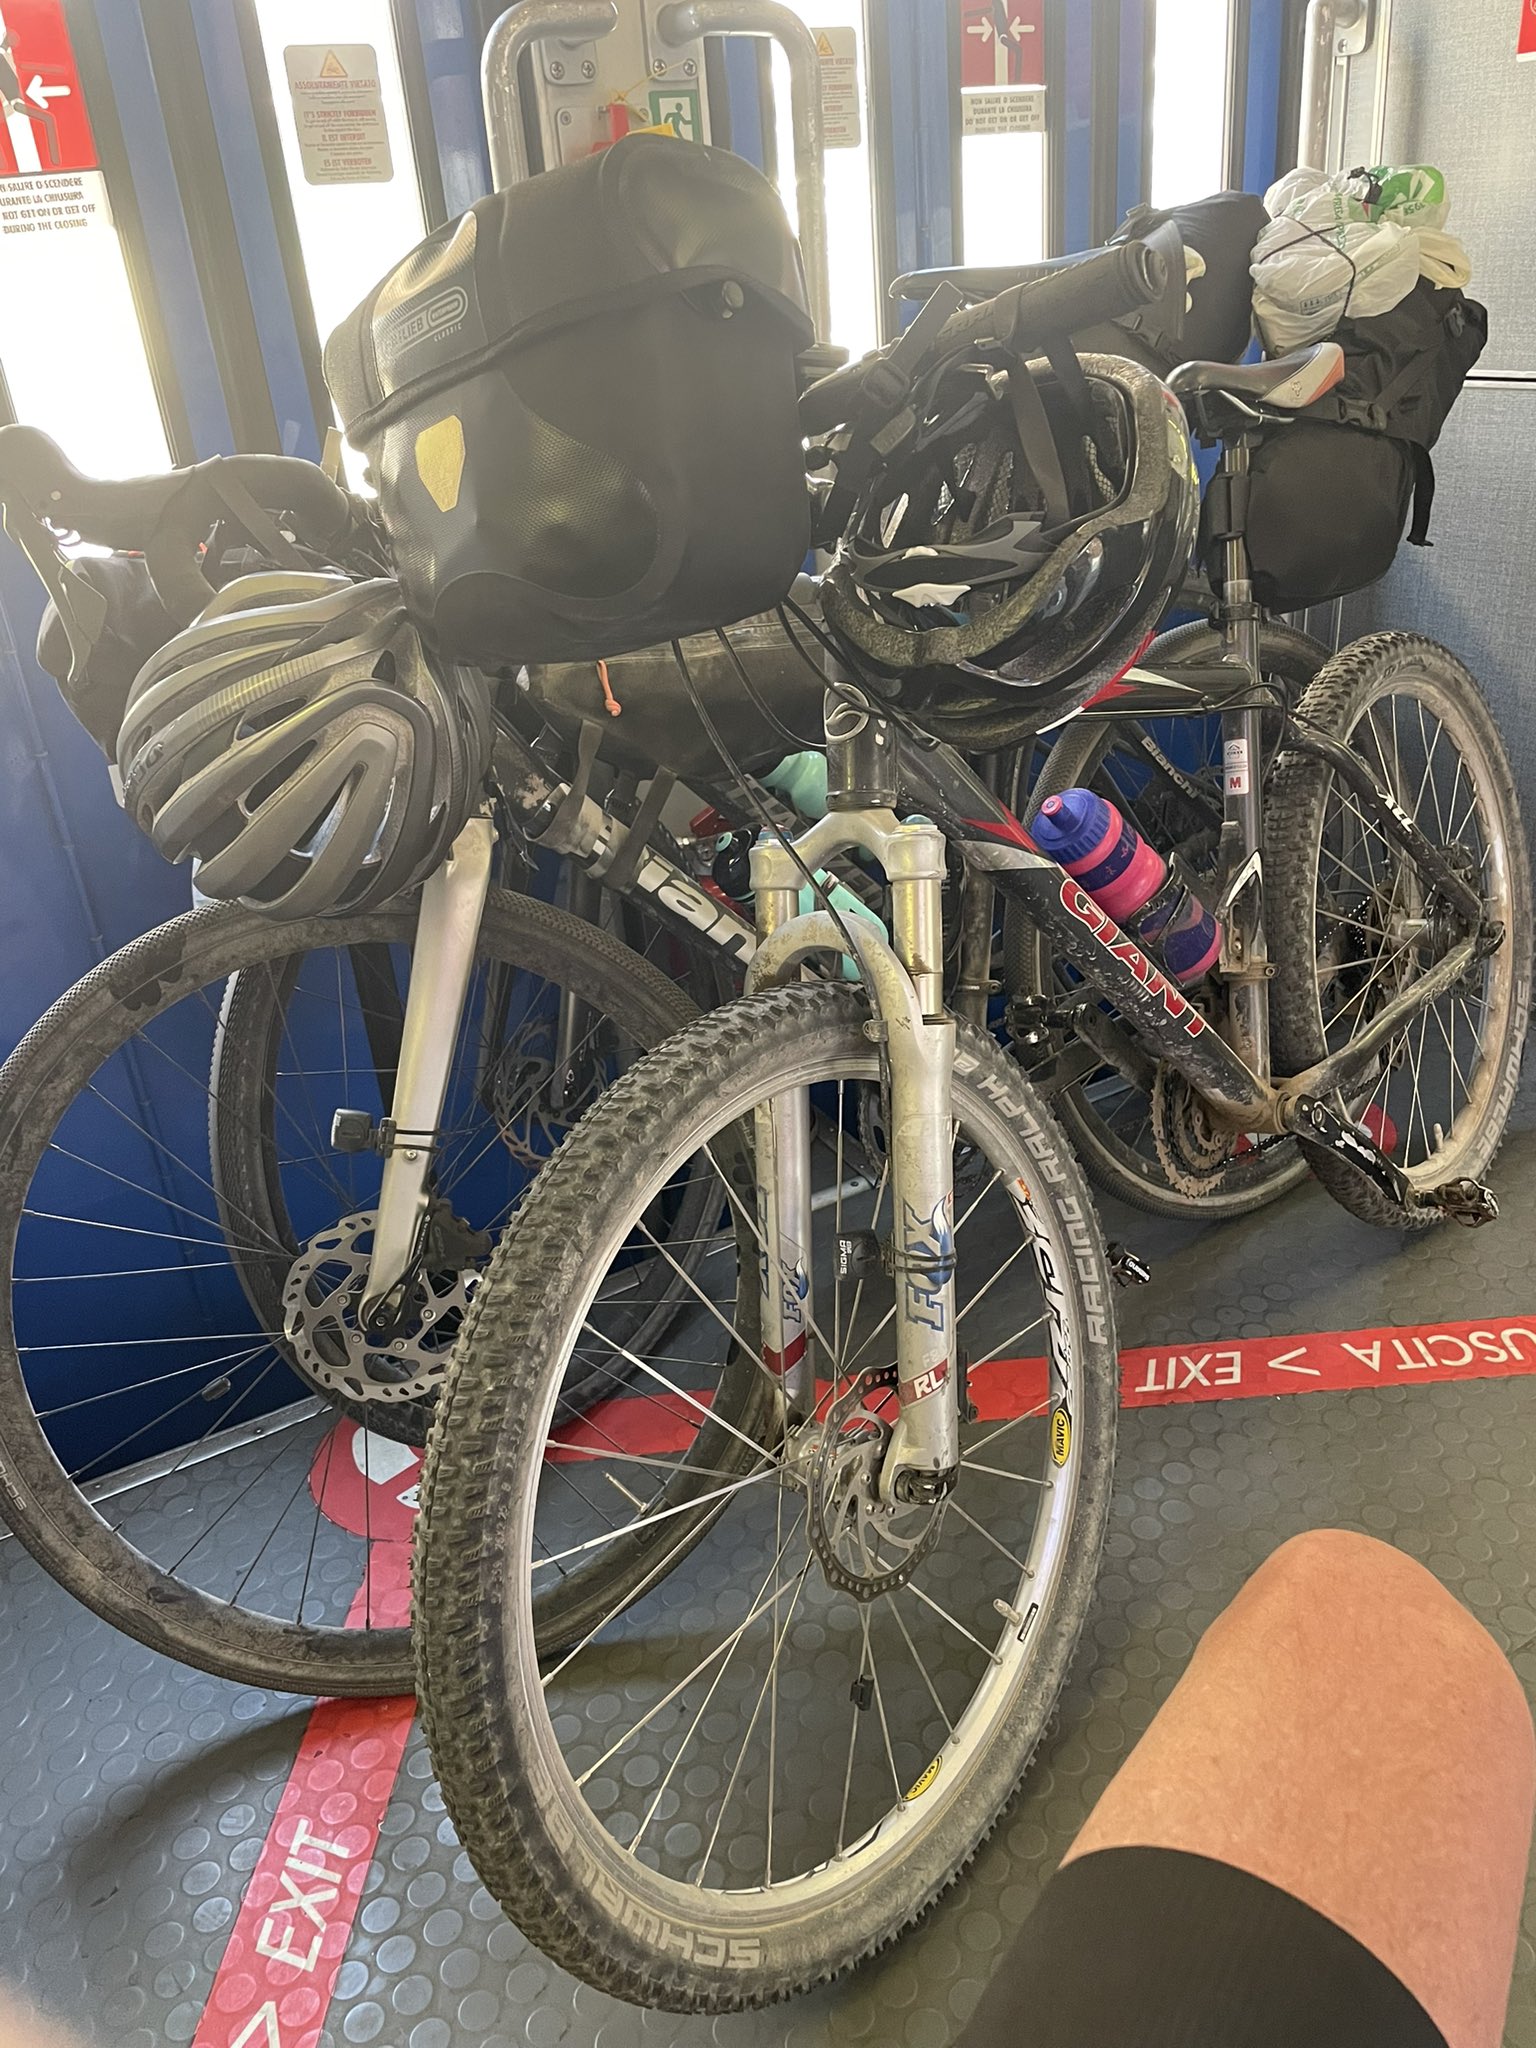 Frank van Dam, Bureau Binnenblad 🚴‍♂️ Twitter: fiets in de trein is in Italië een stuk beter geregeld dan in NL. Aparte fietsencoupé met ophangrek voor fietsen. En